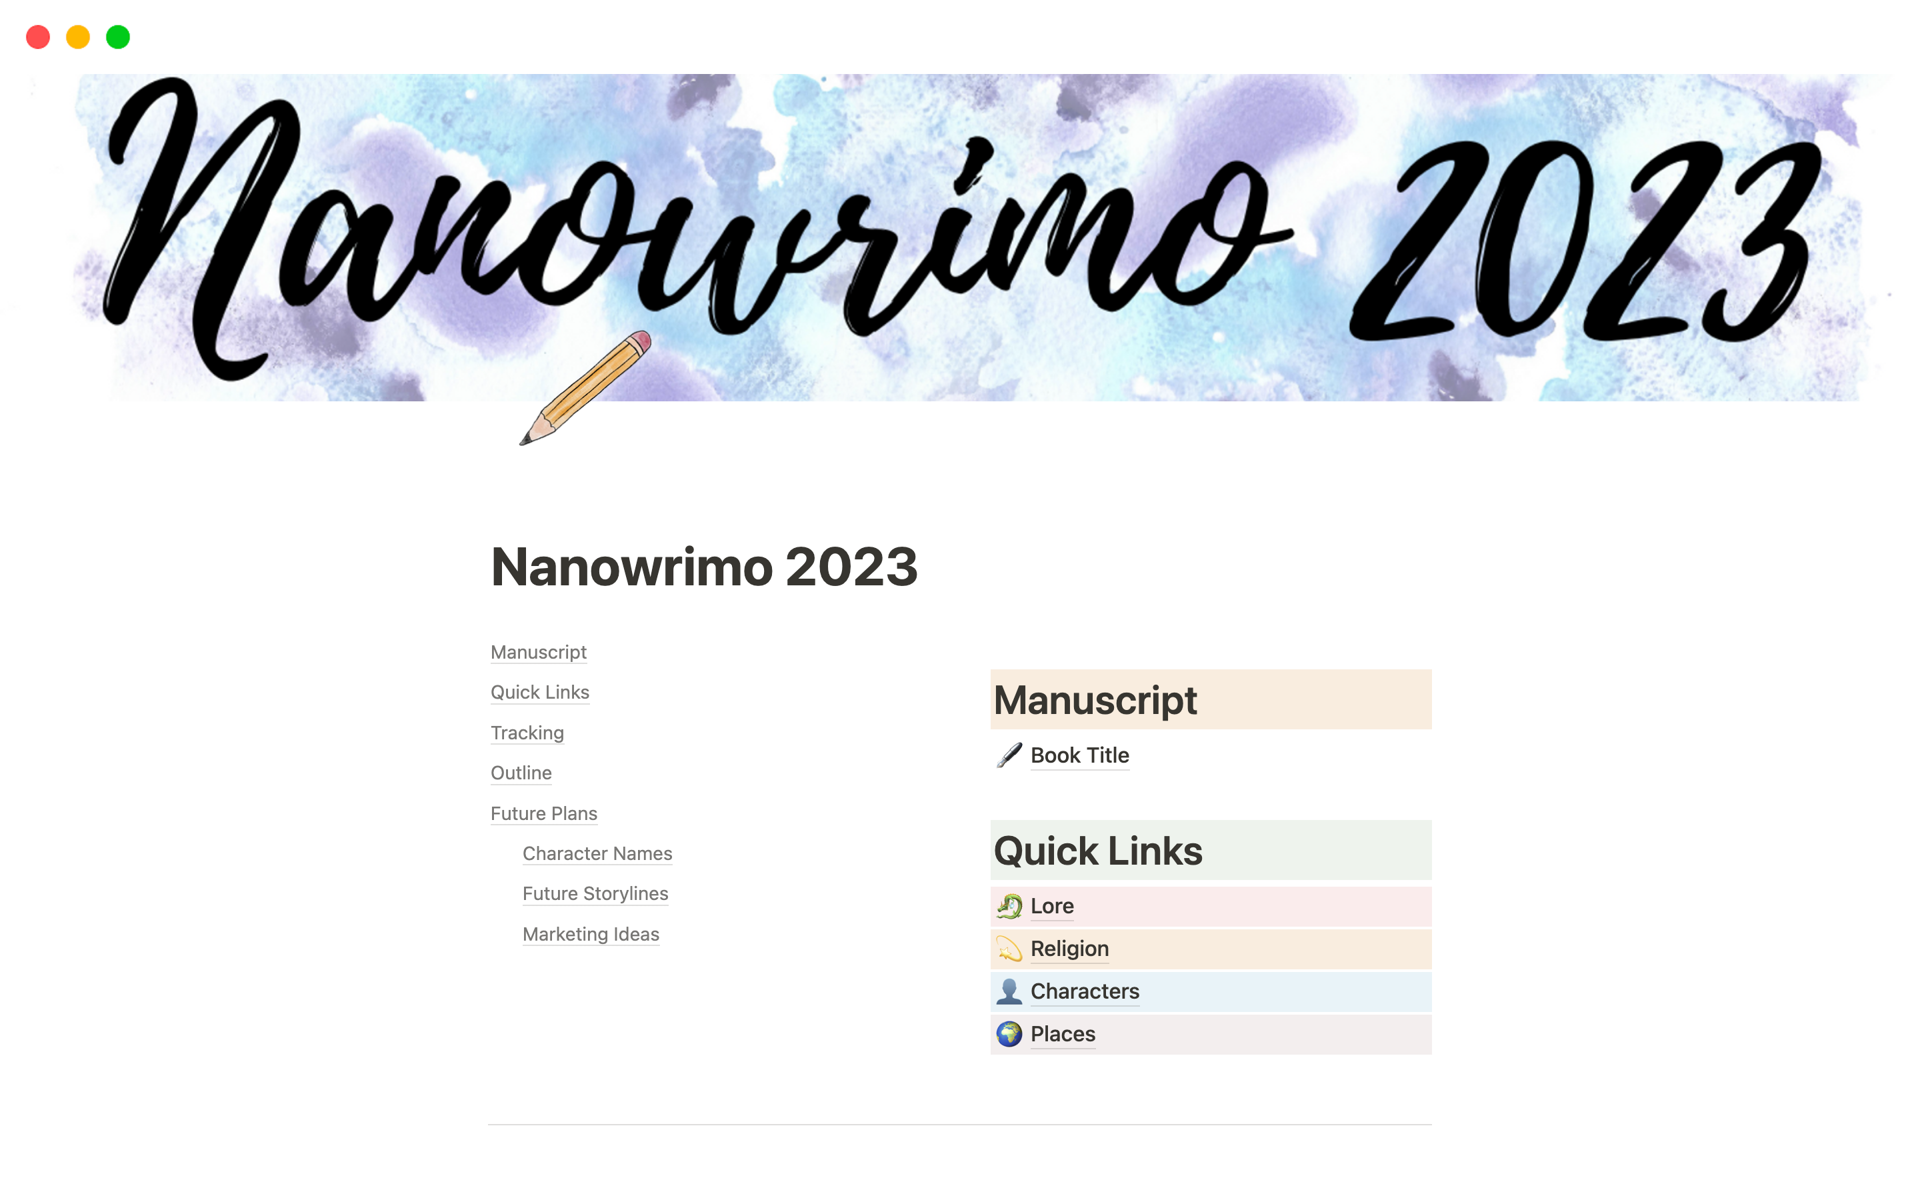 Vista previa de plantilla para Nanowrimo 2023